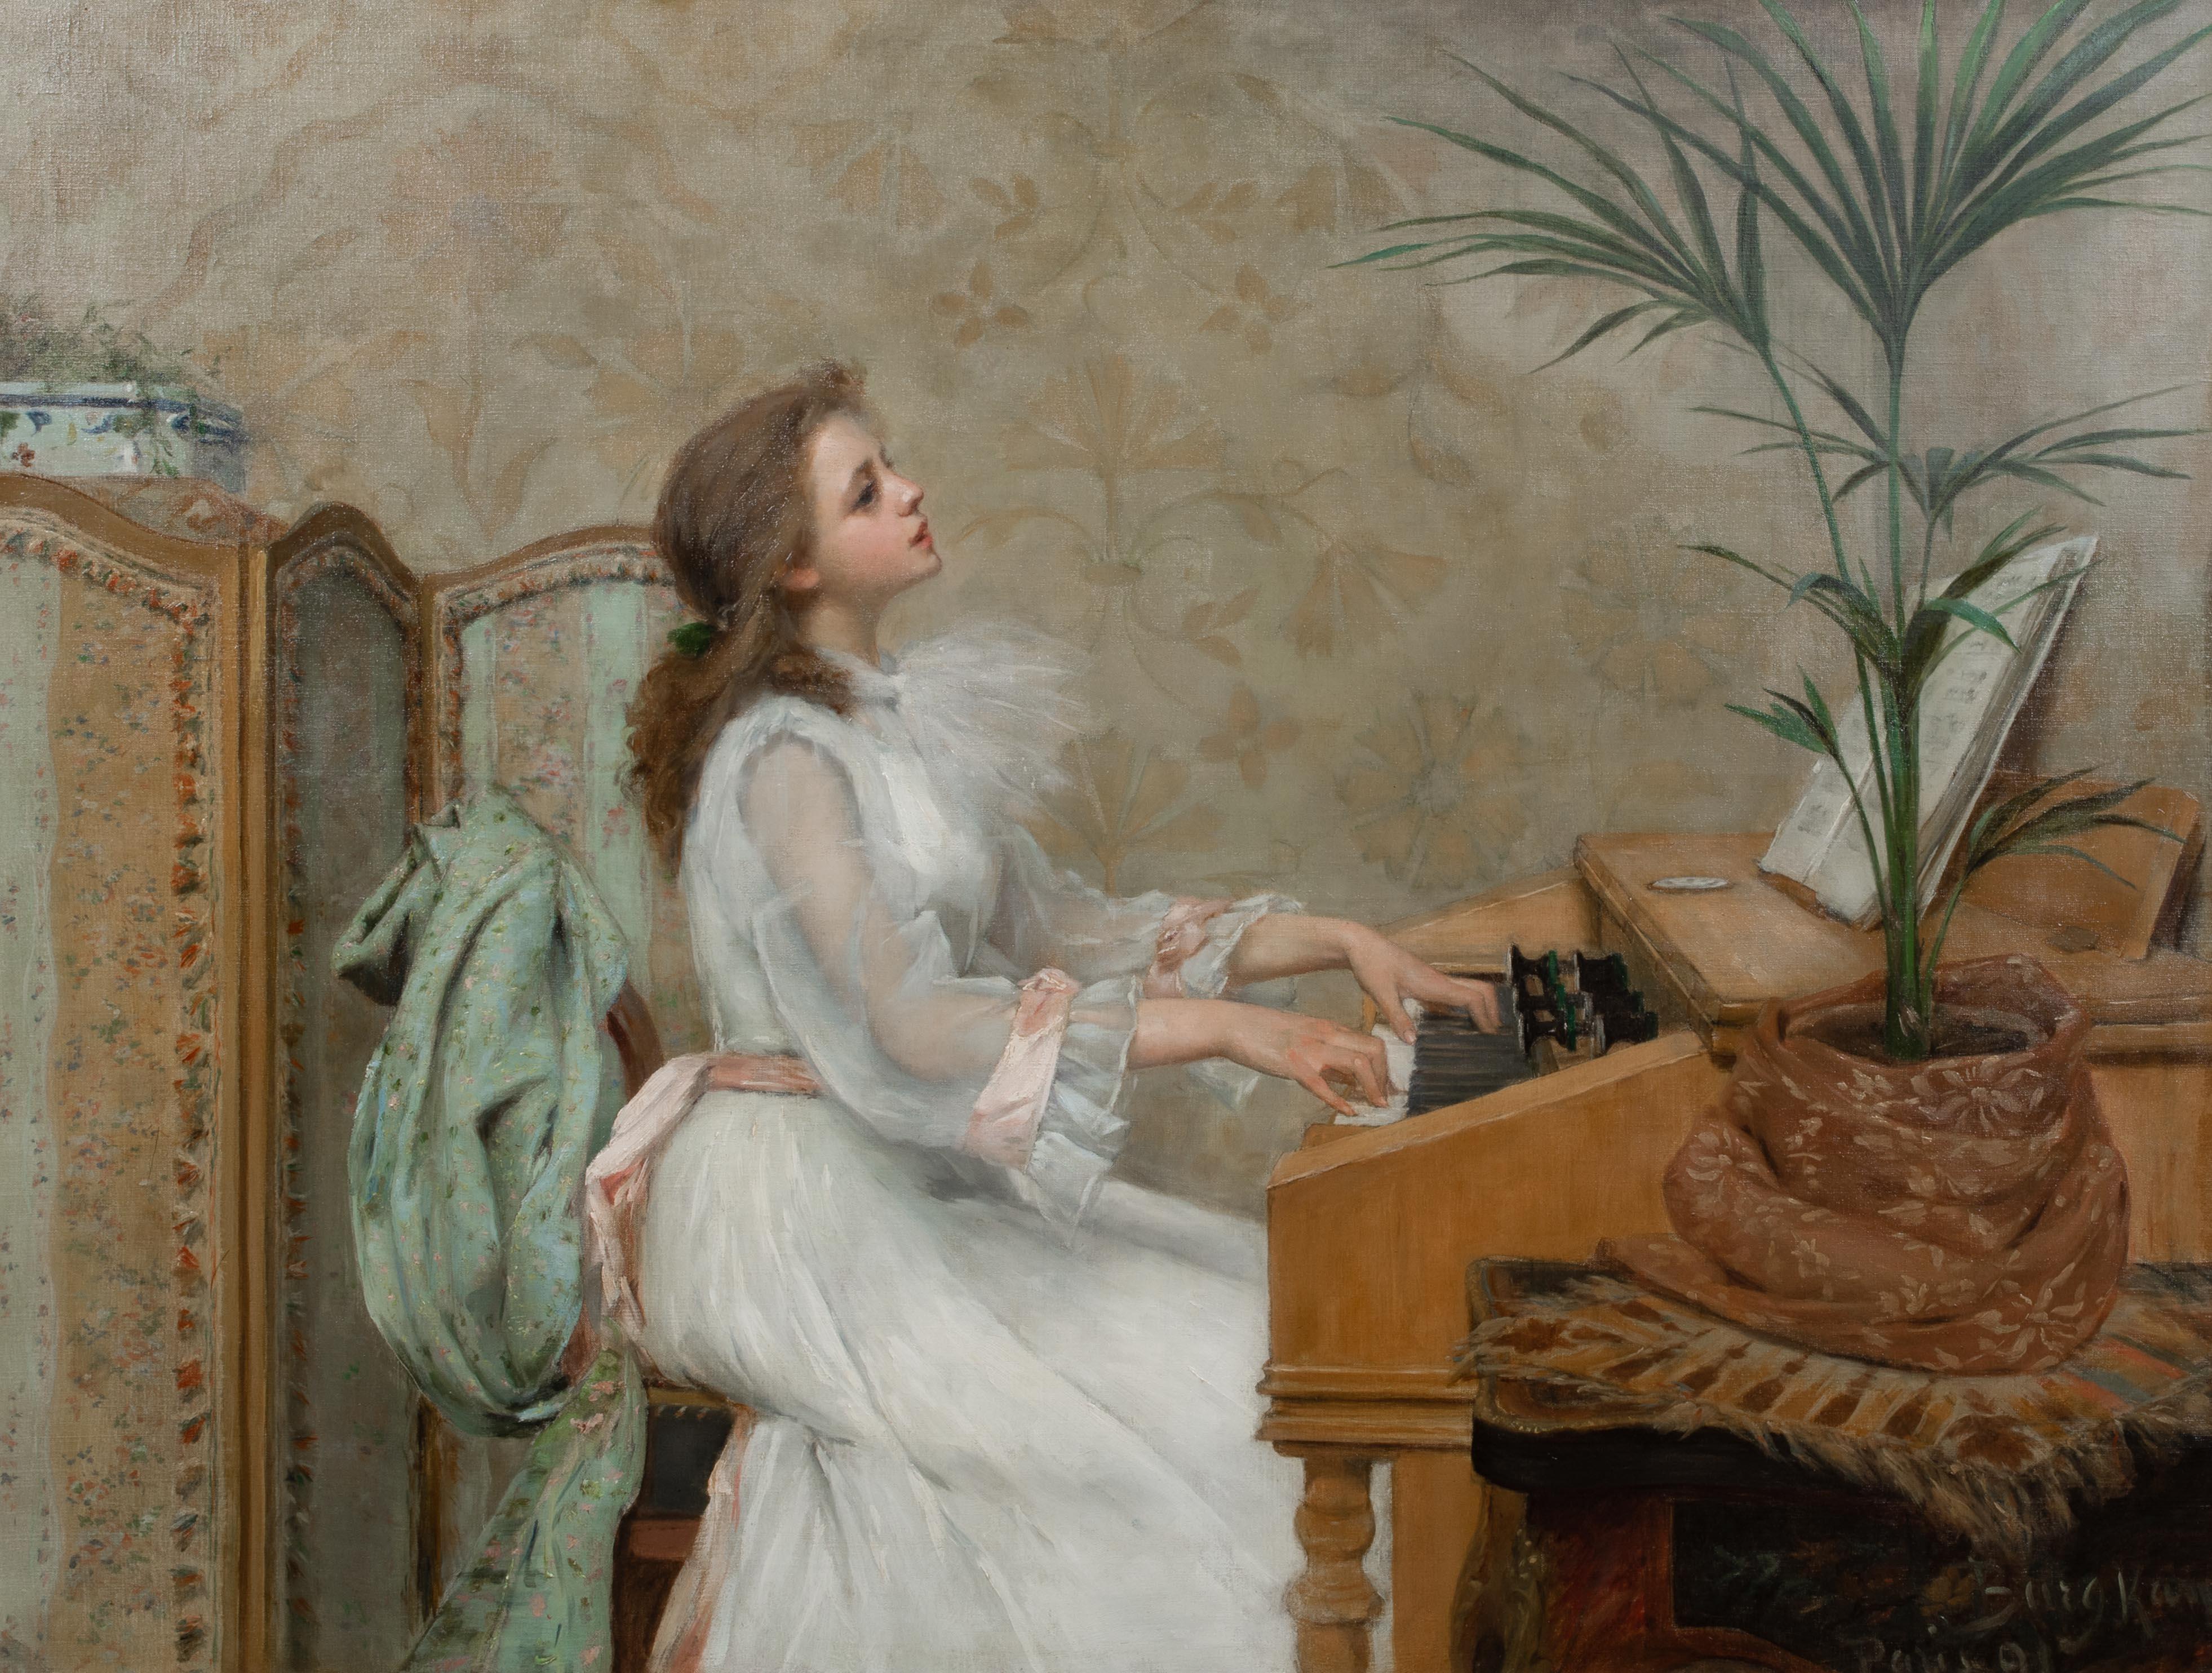 Porträt eines Mädchens, das Klavier spielt, 19. Jahrhundert

von Berthe BURGKAN (1855-1936)

Großes französisches Porträt eines jungen Mädchens im weißen Kleid beim Klavierspiel, 19. Jahrhundert, Öl auf Leinwand von Berthe Burgkan. Ausgezeichnete